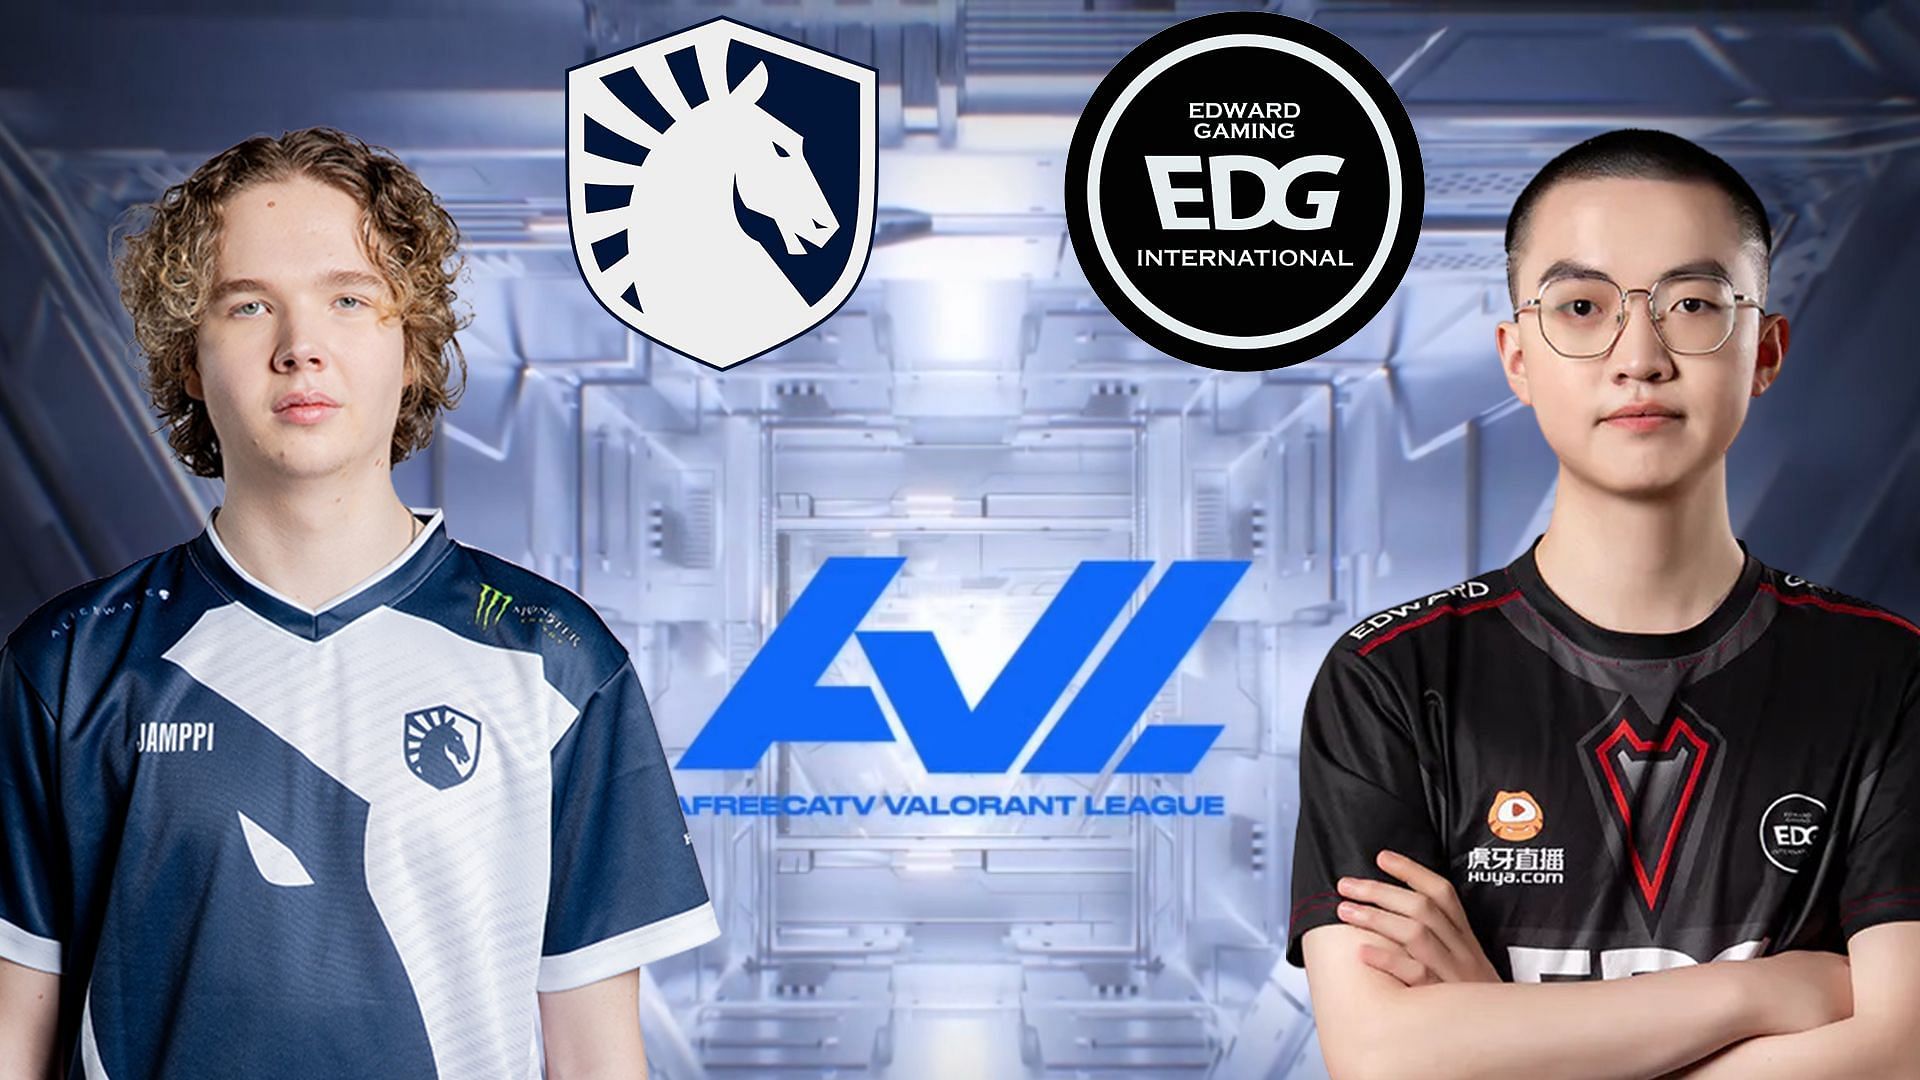 Team Liquid vs EDward Gaming - AfreecaTV Valorant League (Image via Sportskeeda)